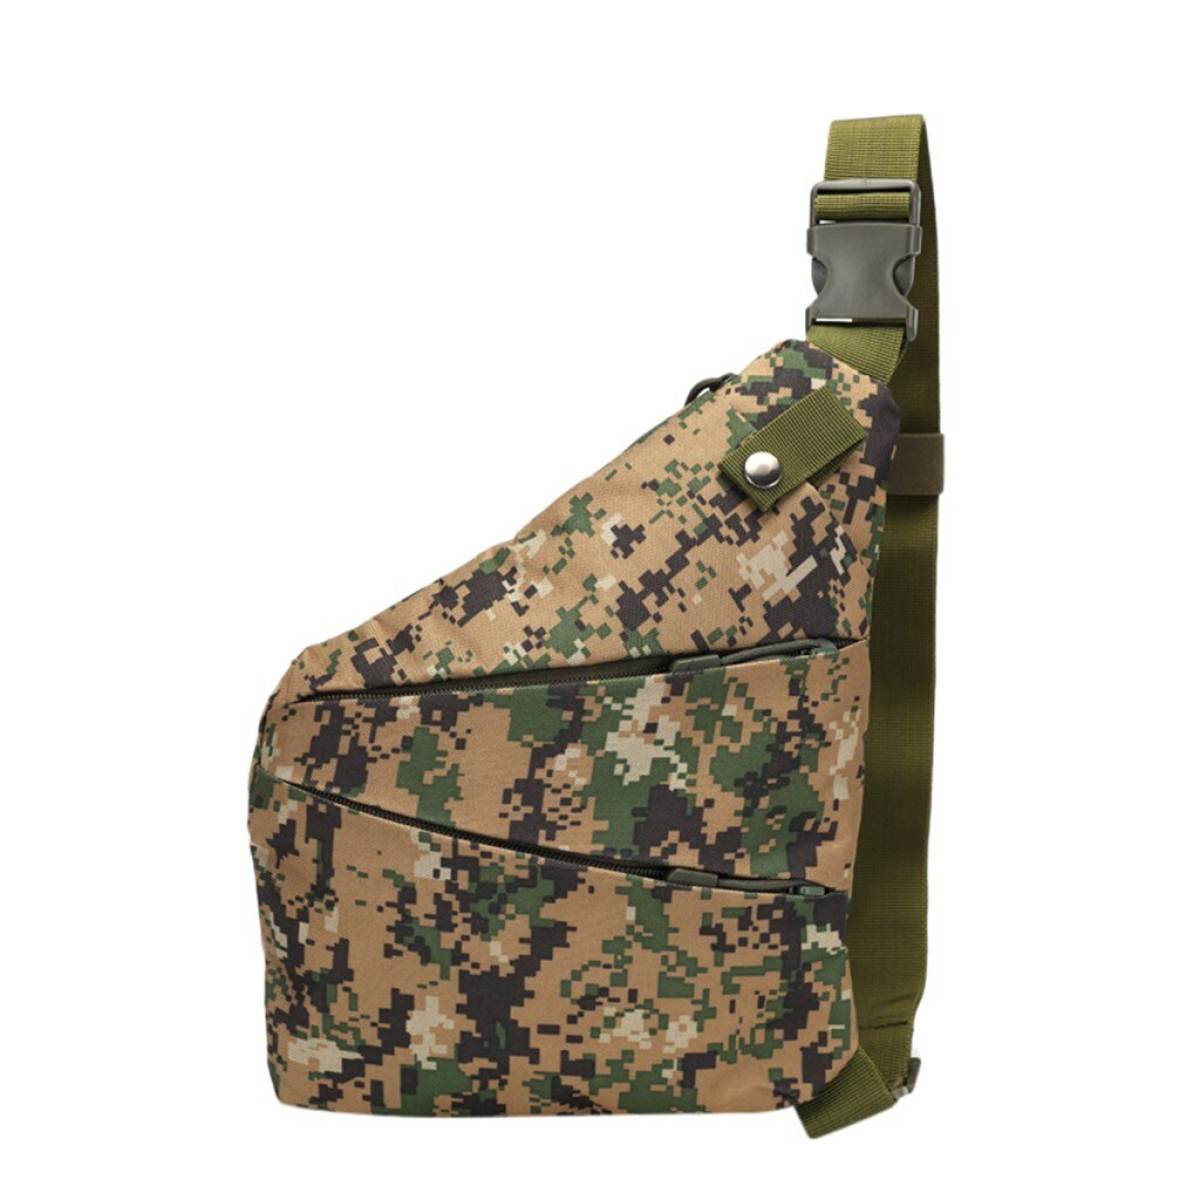 tactical side bag